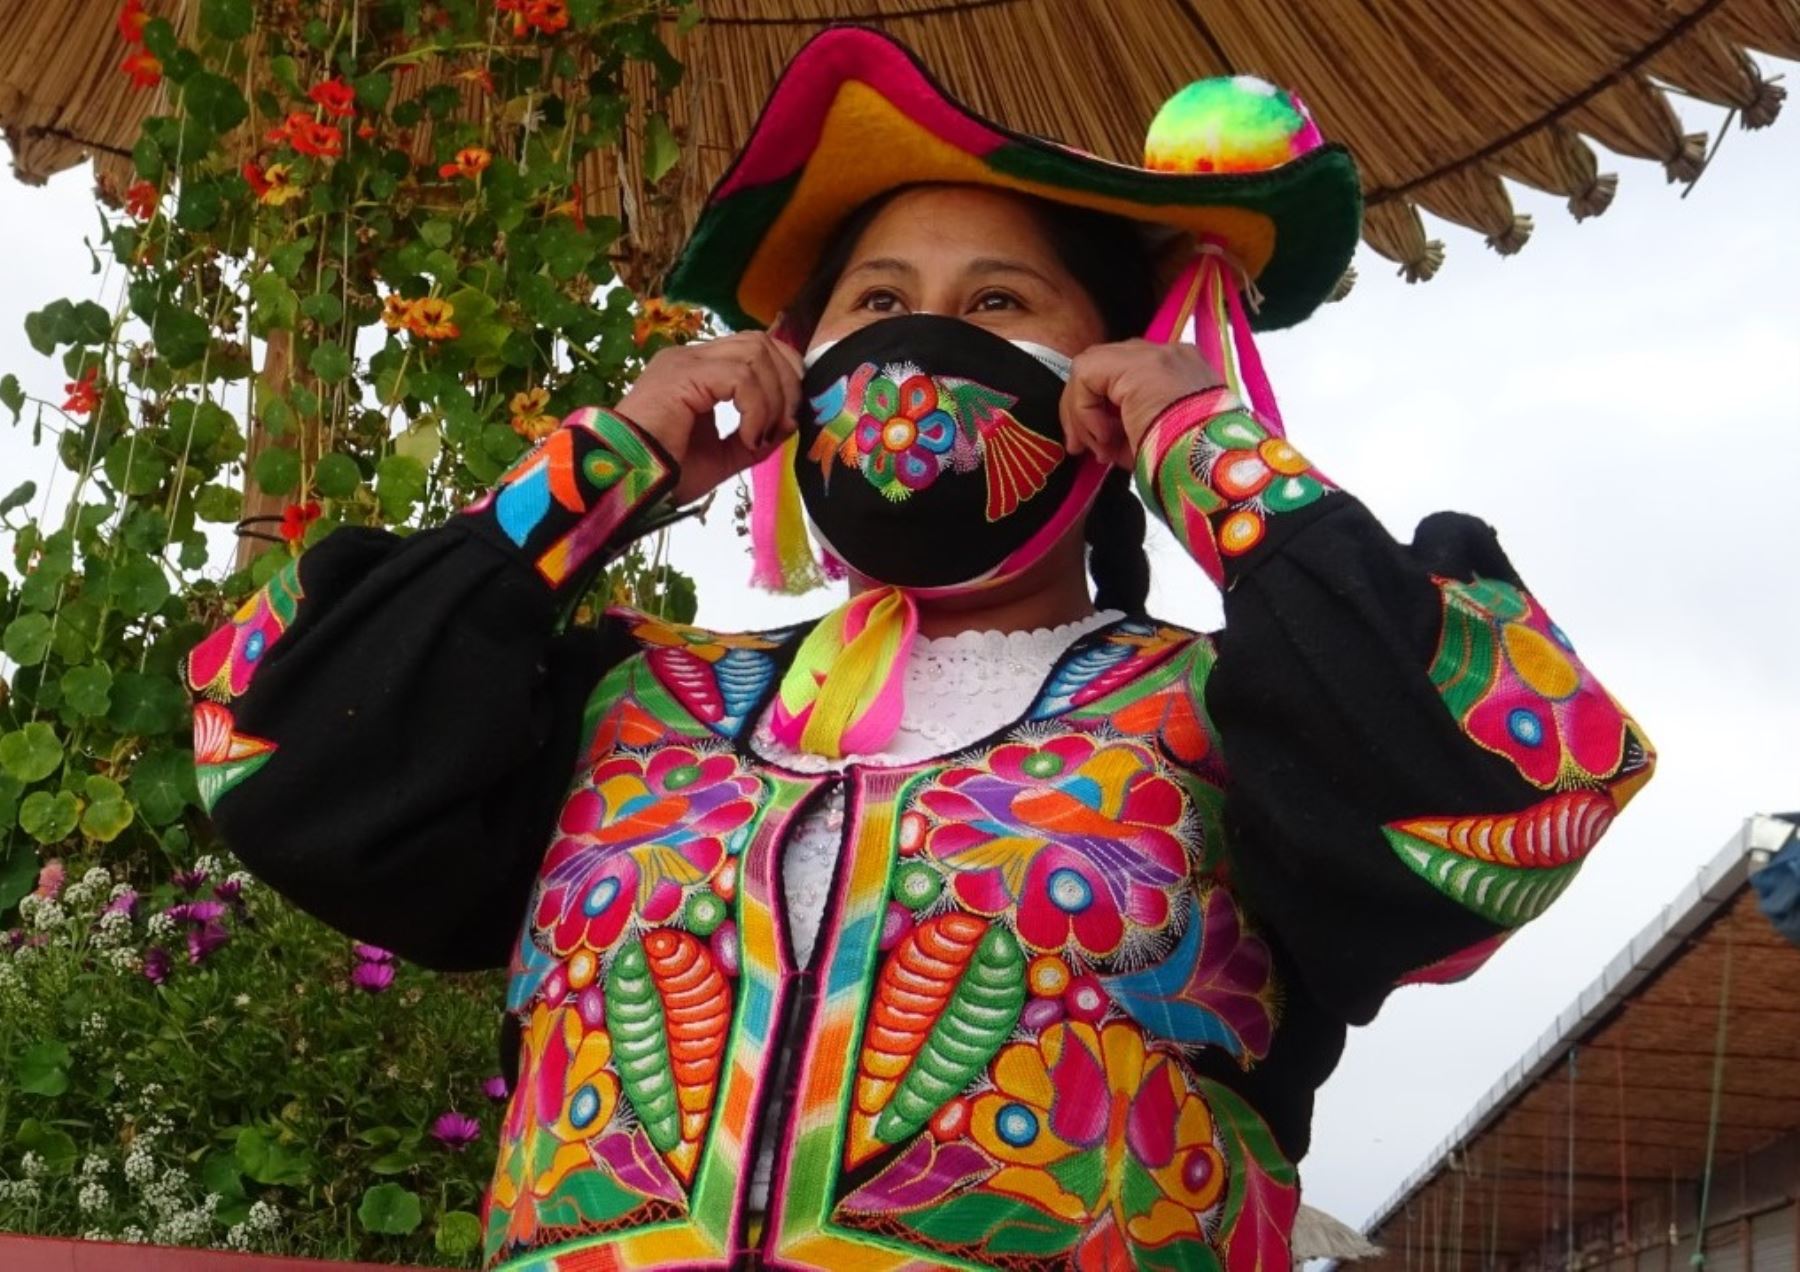 Artesanas emprendedoras de Puno innovan con mascarillas inspiradas en motivos andinos para superar impacto económico causado por la pandemia de coronavirus (covid-19). Foto: Juan Humberto Ccopa